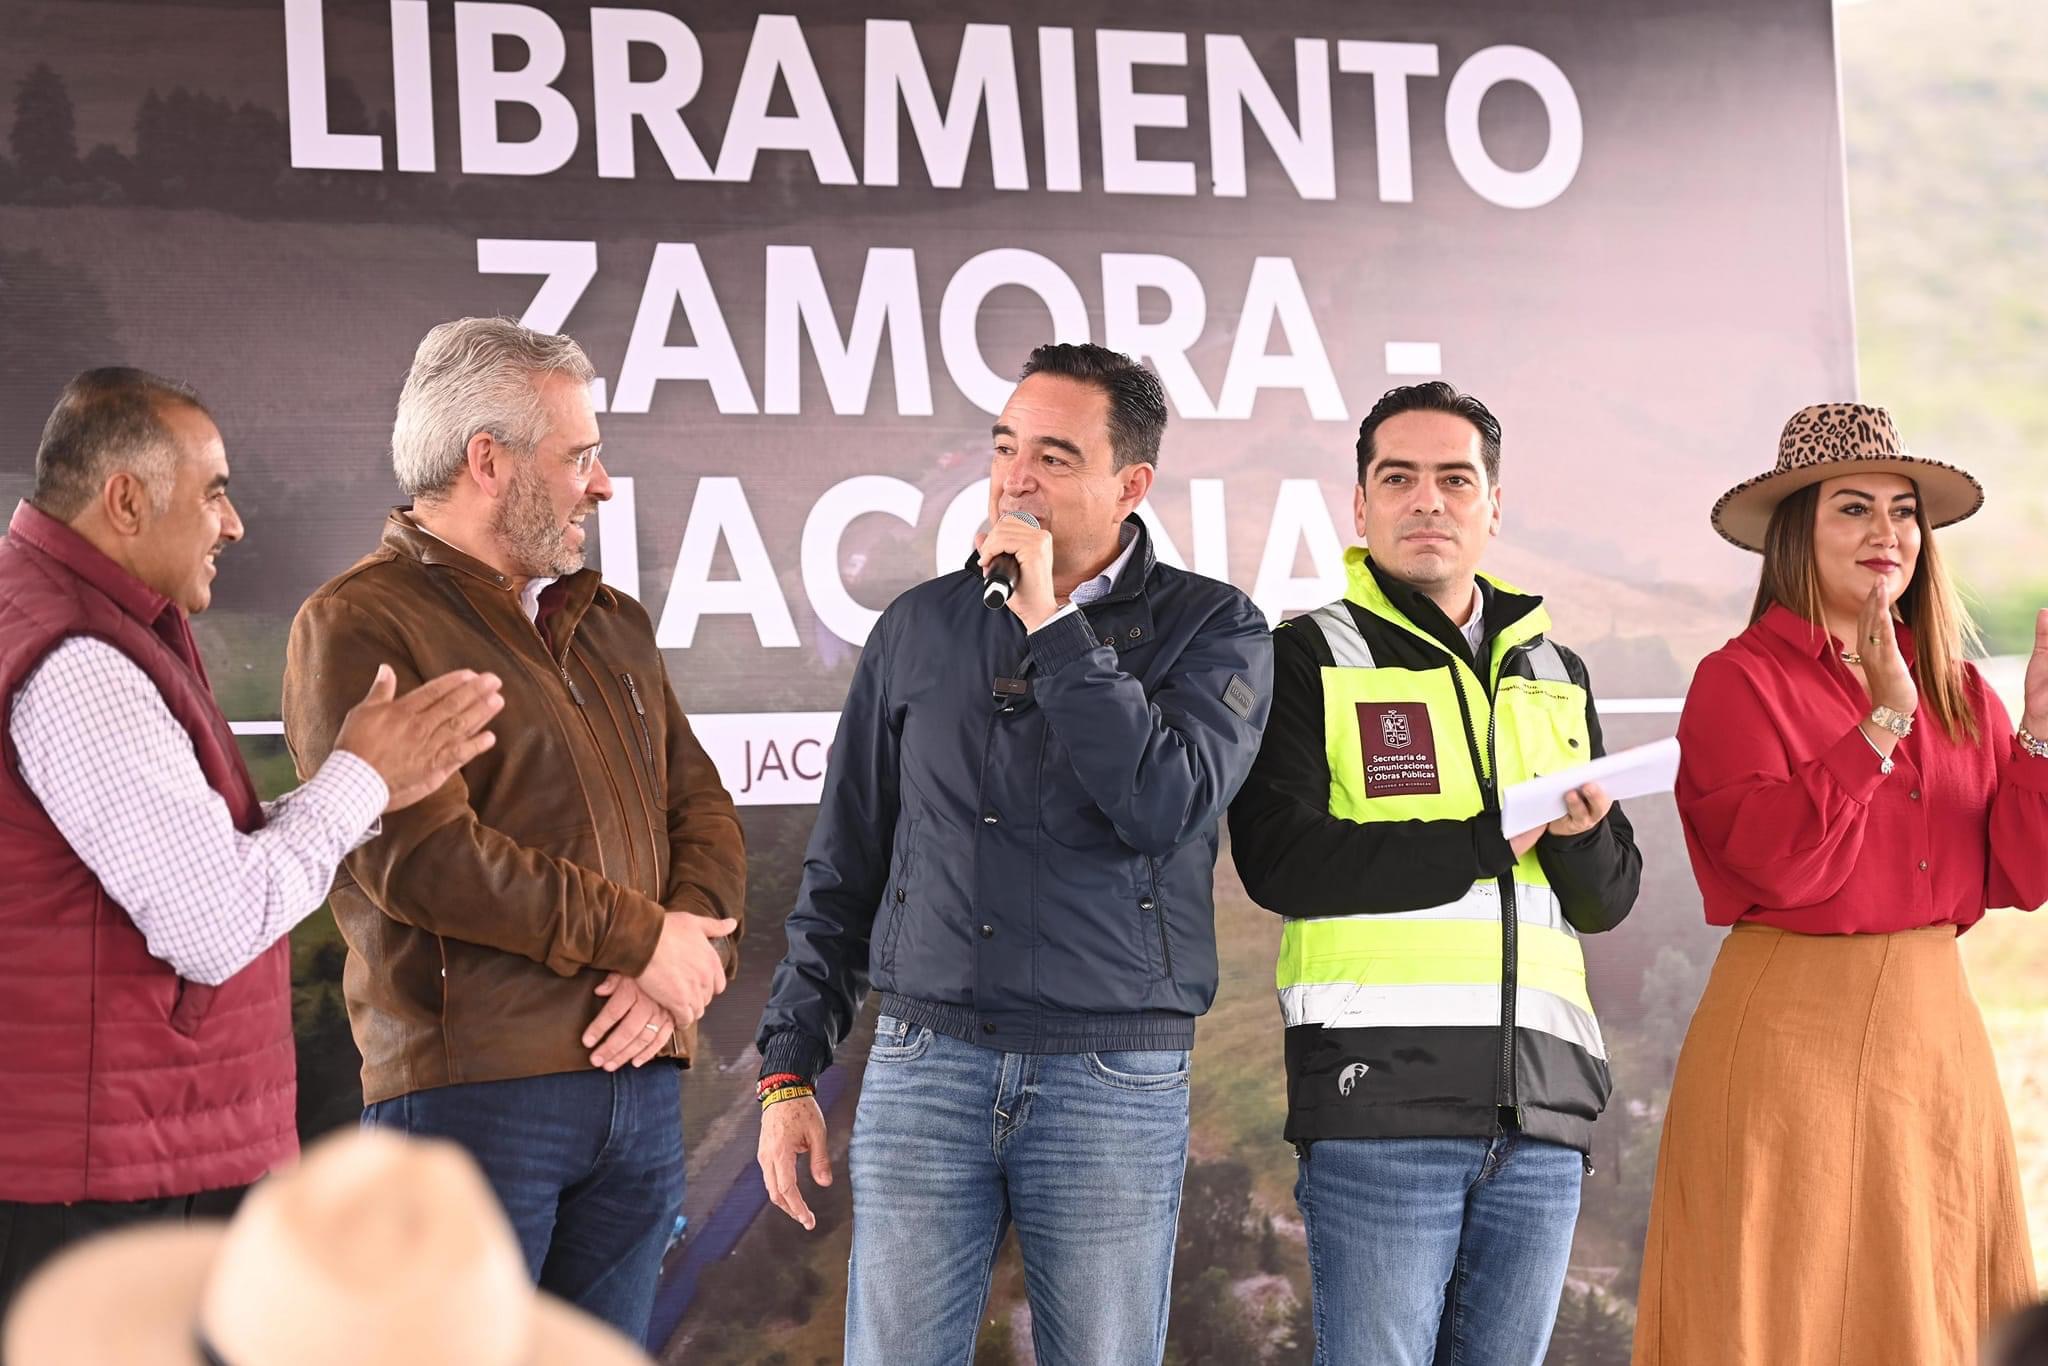 Carlos Soto participó en la inauguración del libramiento Zamora-Jacona